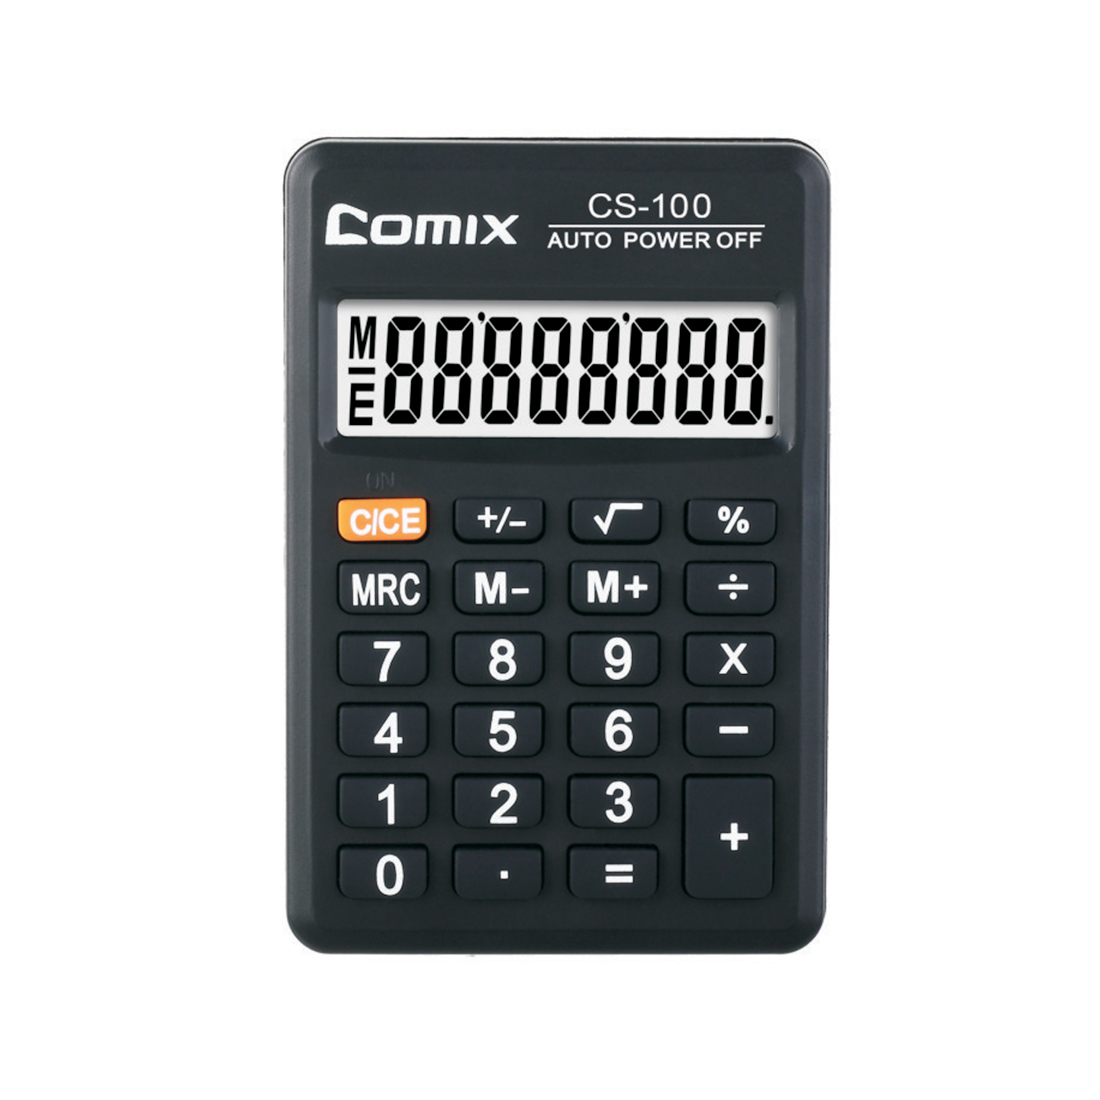 купить Калькулятор карманный, Comix, CS-100, 8 разряд., Карманный, Чёрный в Алматы